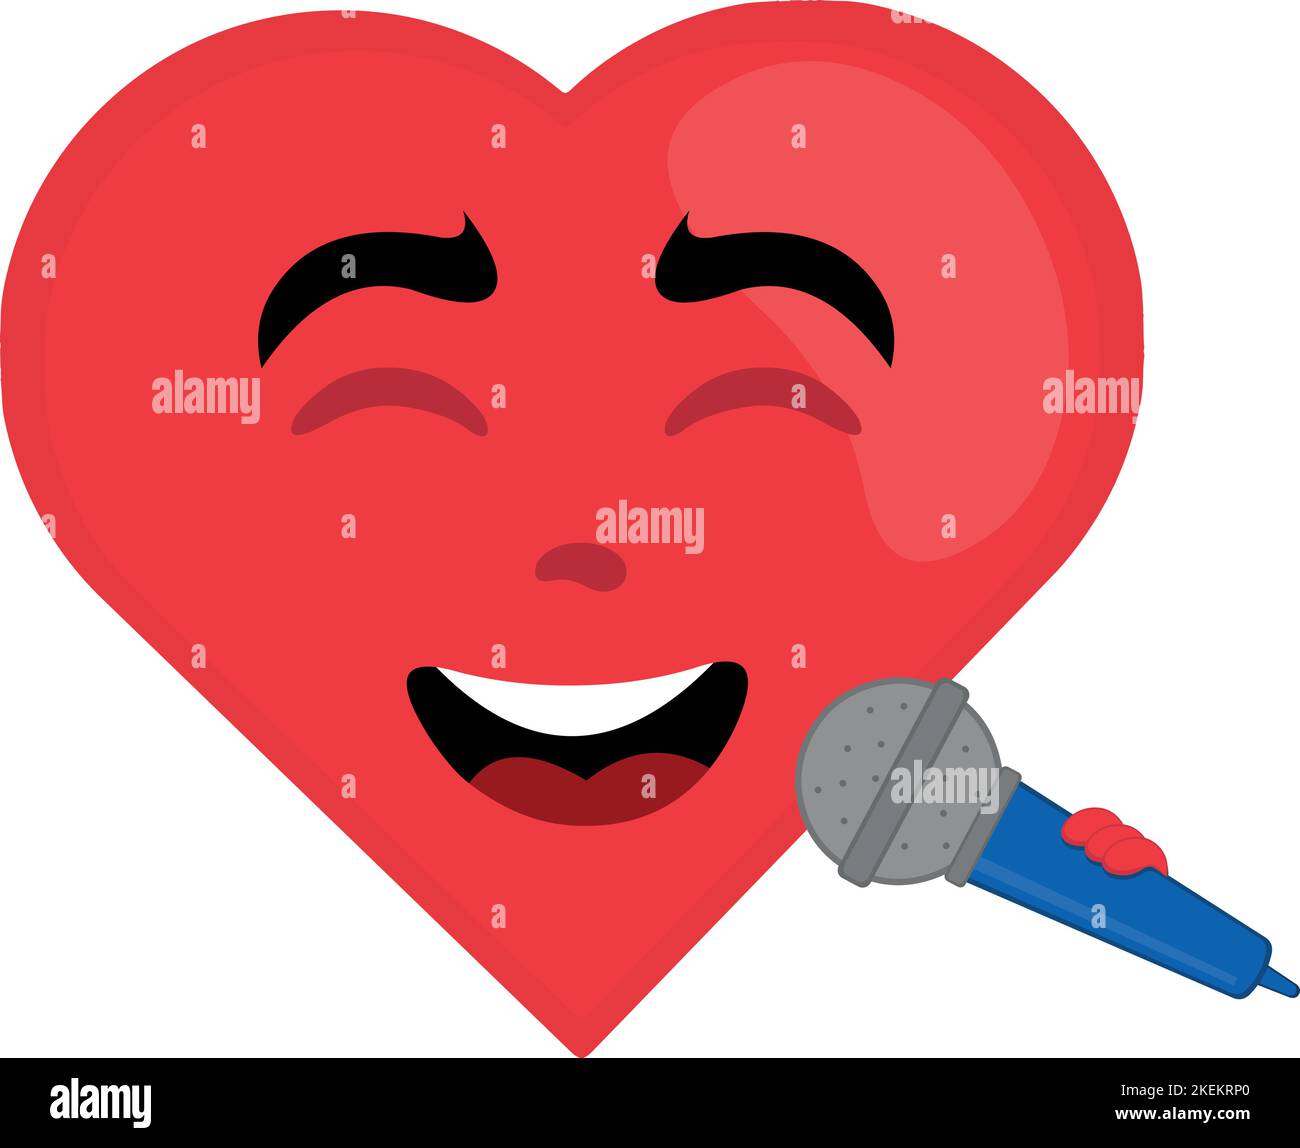 Dessin animé vectoriel illustration d'un coeur chantant avec un microphone en main Illustration de Vecteur